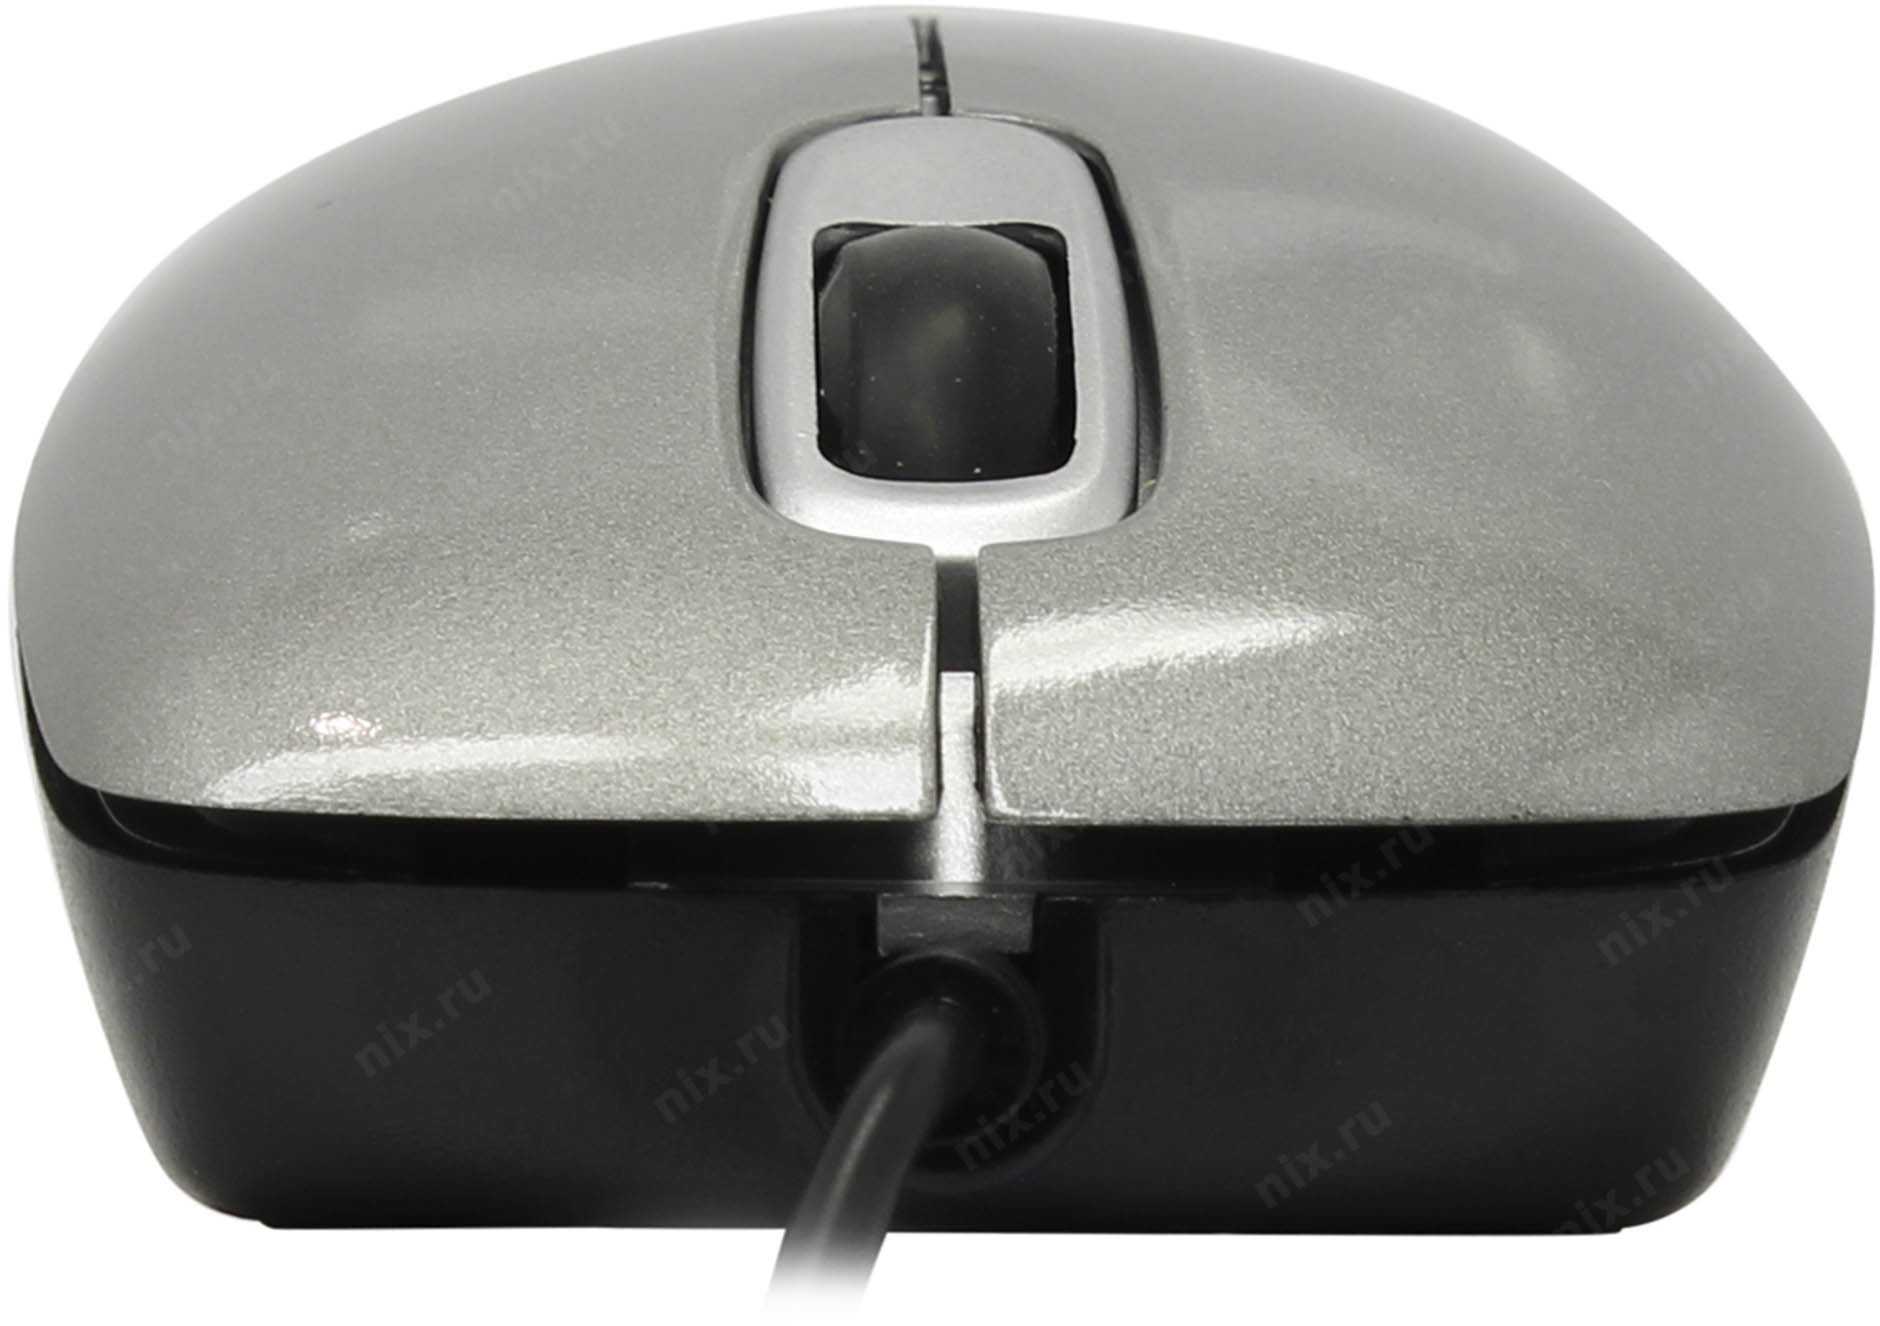 Компьютерные мышки defender orion 300 (черный) купить за 249 руб в екатеринбурге, отзывы, видео обзоры и характеристики